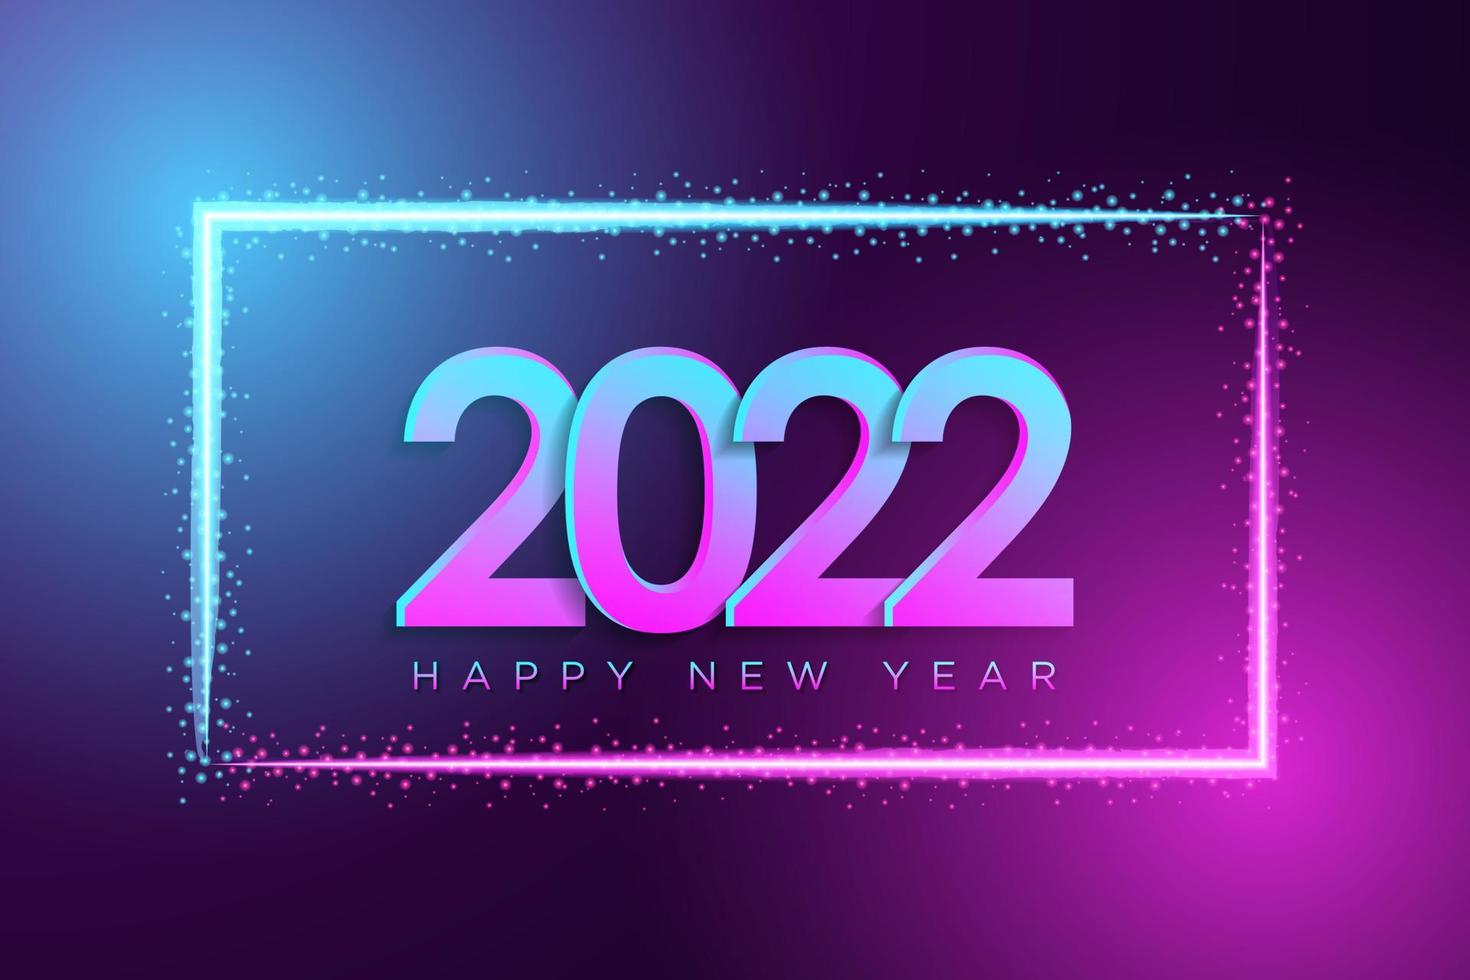 gott nytt år 2022 bakgrund i realistisk neonljusstil med lysande effekt för gratulationskort, affisch, banderoll. vektor illustration.